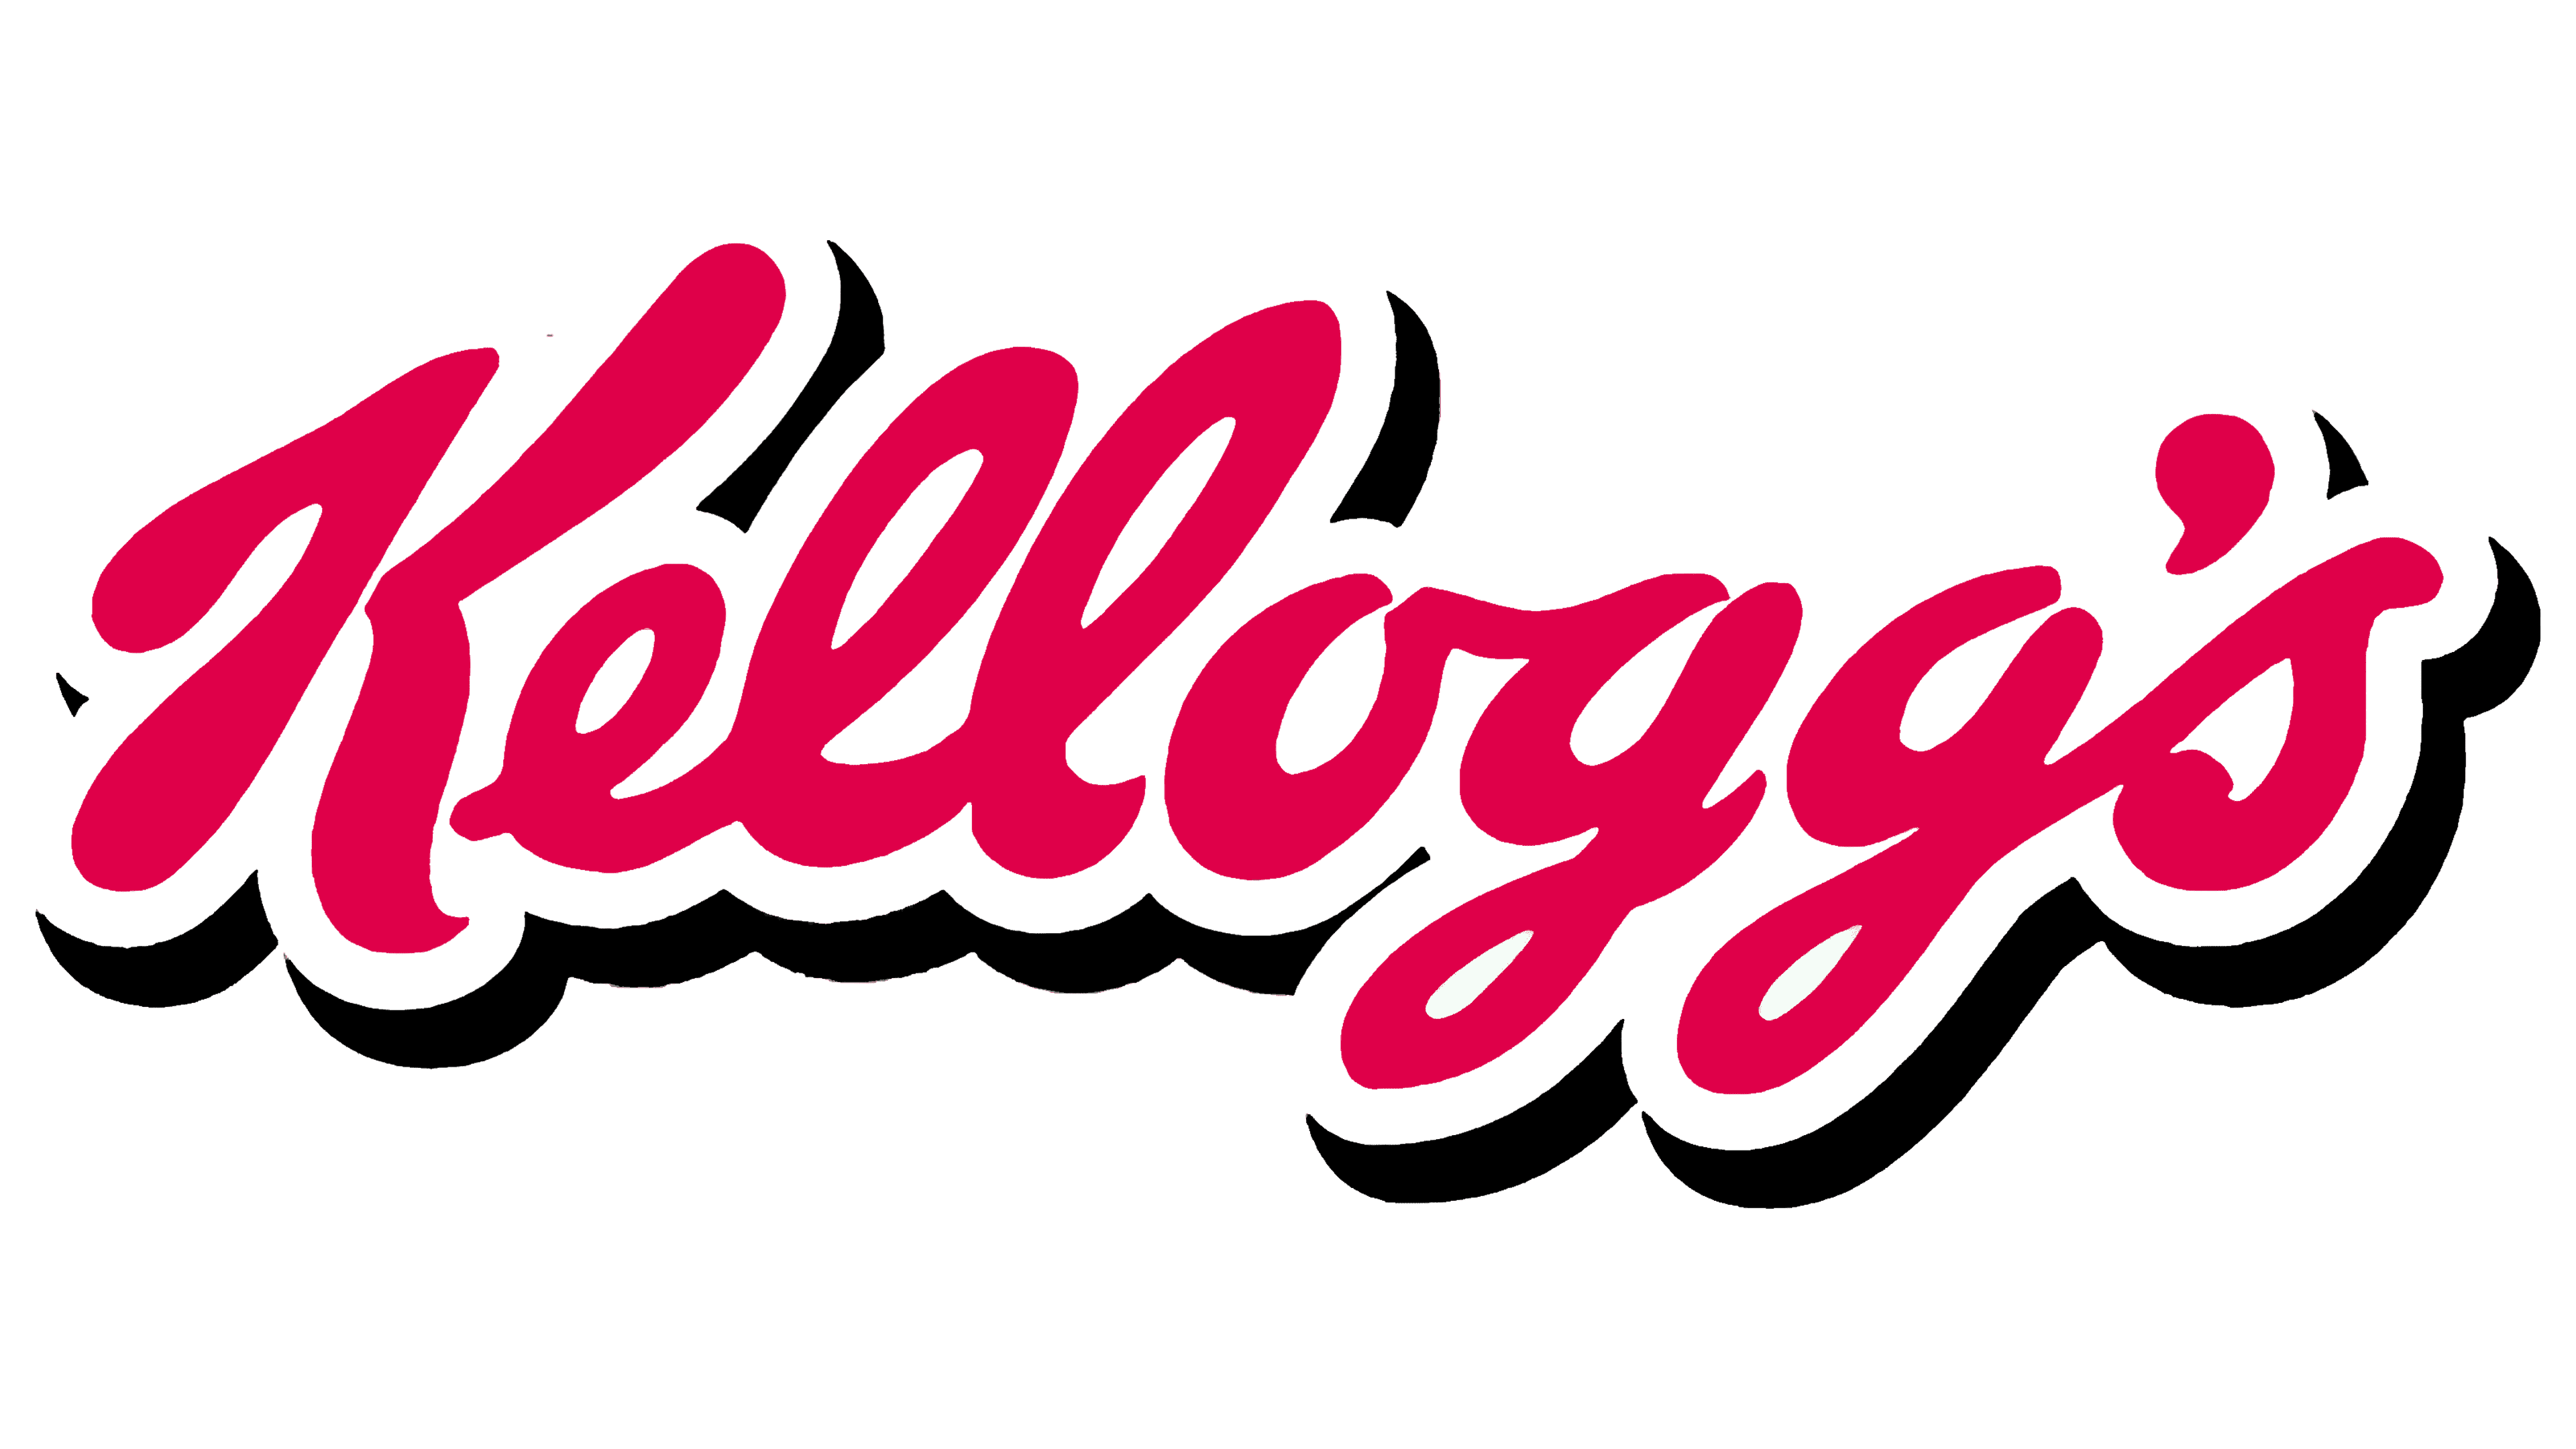 Kellogg-Embleme